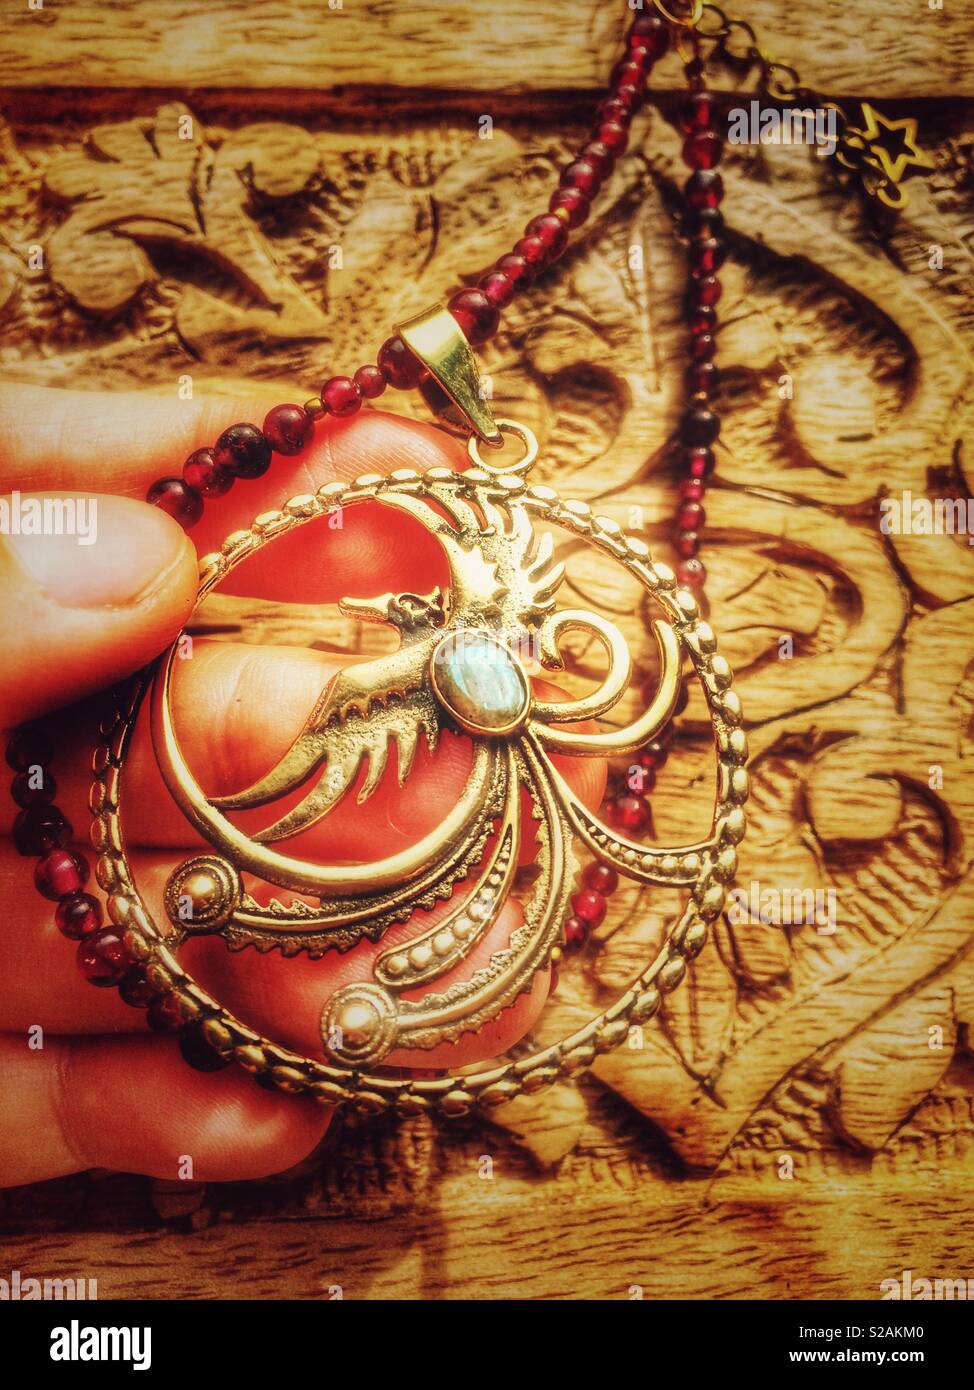 Phoenix pendant necklace jewelry Stock Photo - Alamy